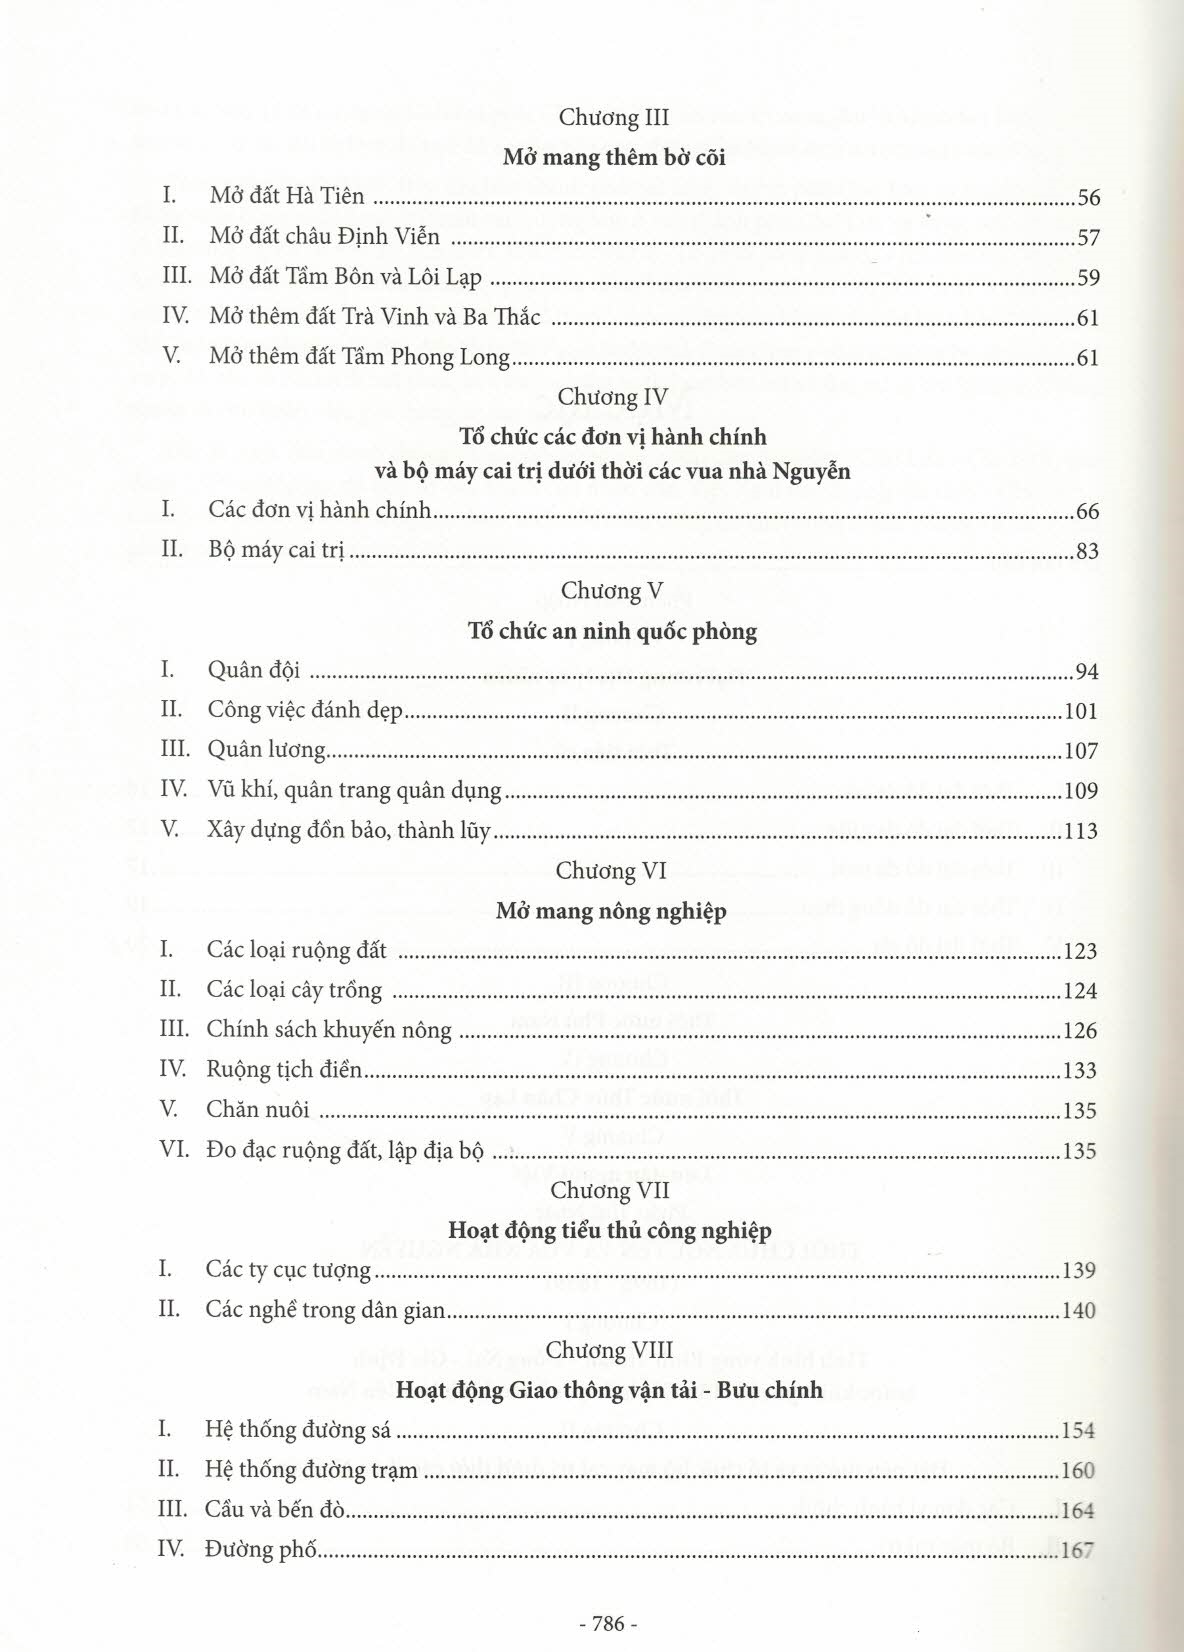 Gia Định Sài Gòn Thành Phố Hồ Chí Minh - Dặm Dài Lịch Sử (1968-2020) - Tập 1 (1968-1945)